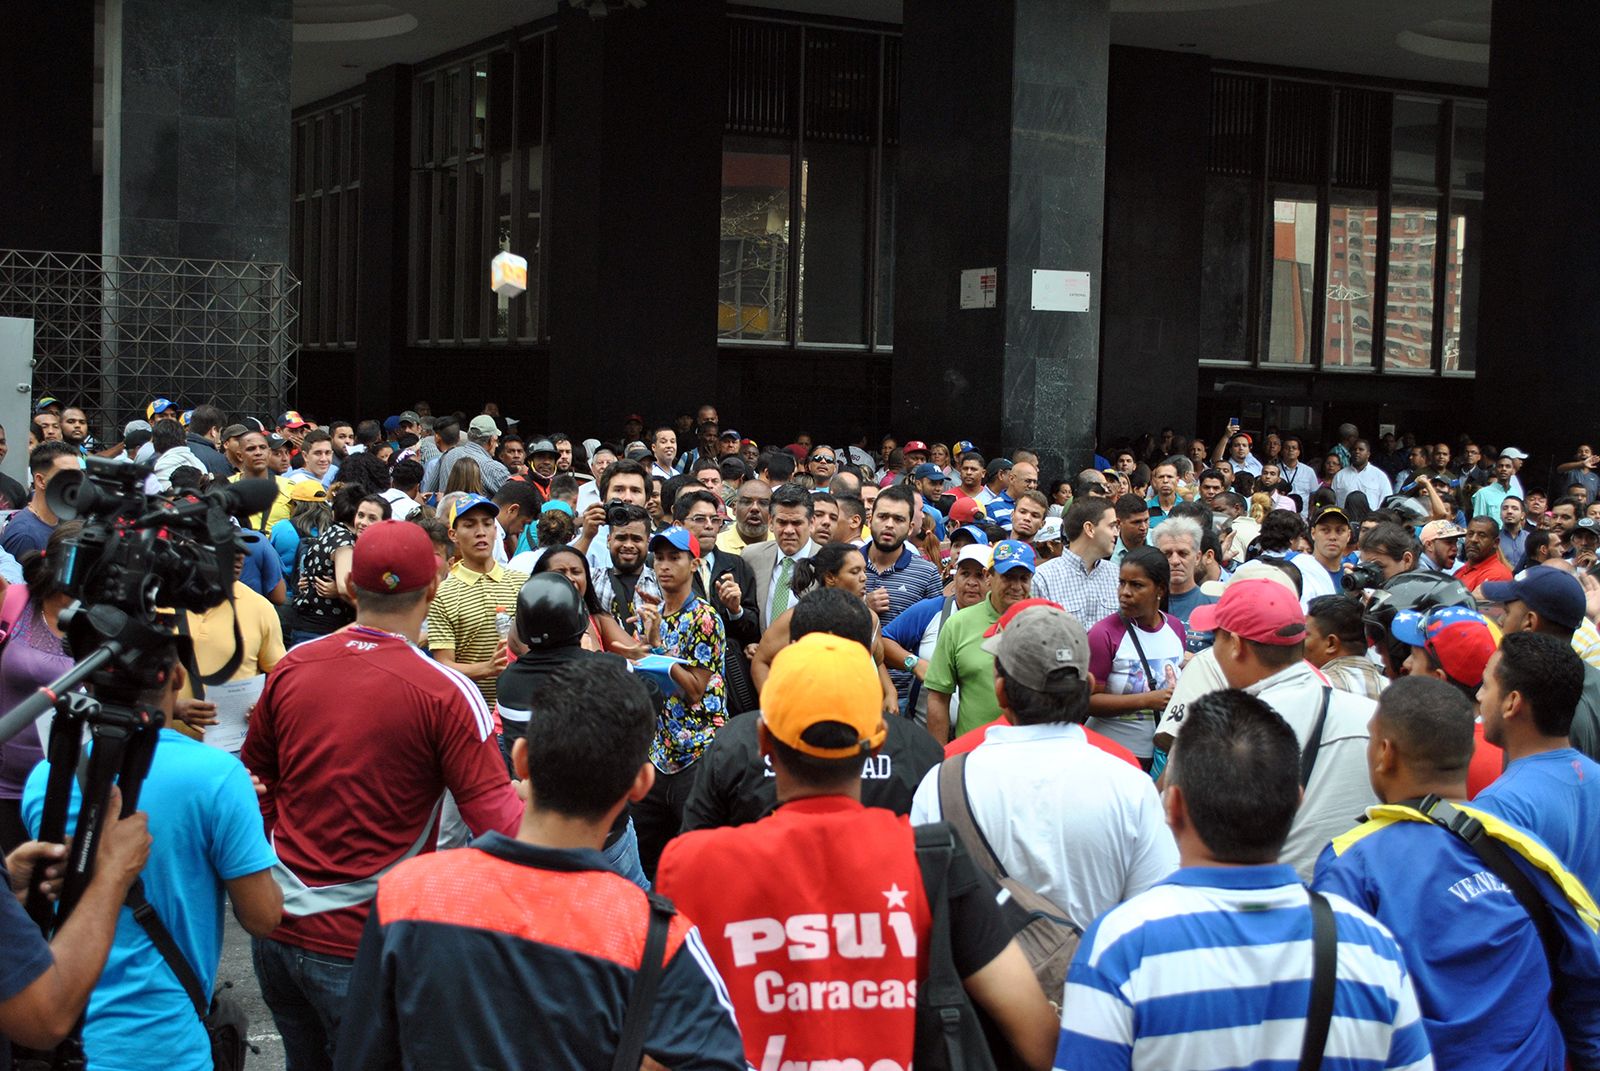 Partidarios del gobierno y opositores se enfrentan a golpes por referendo revocatorio contra Maduro